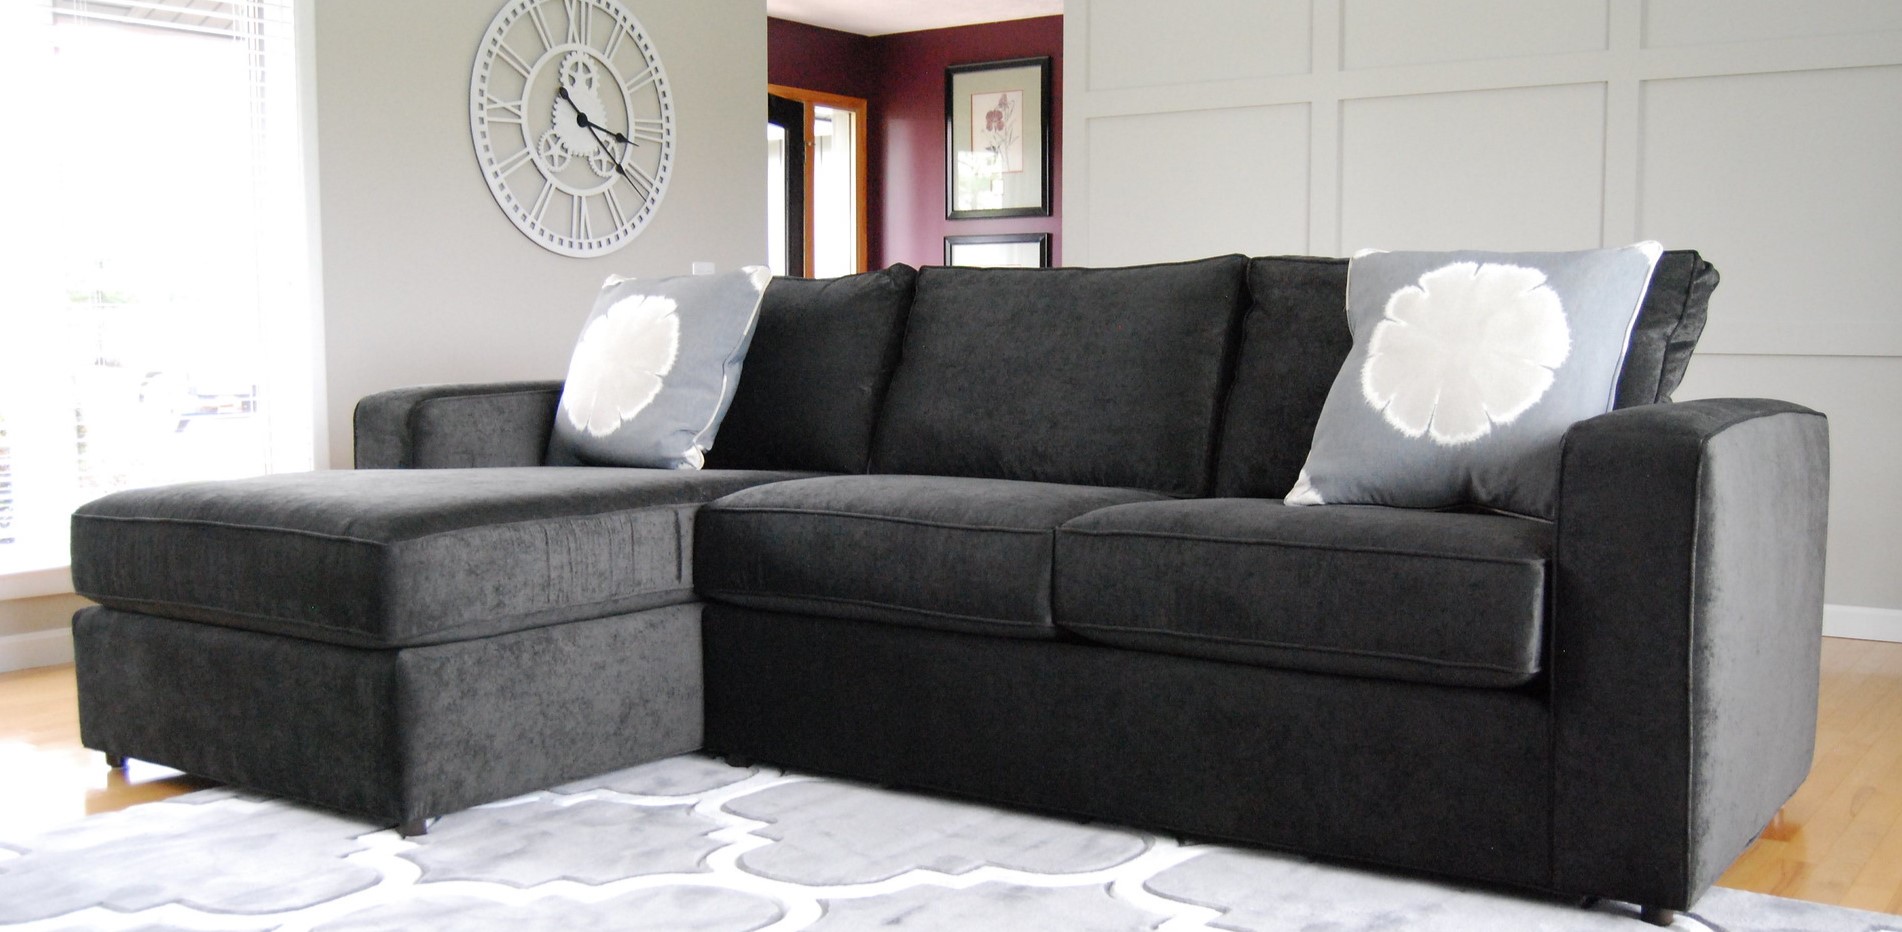 Если в диване минимальное количество швов и стыков, значит, его можно использовать для сна